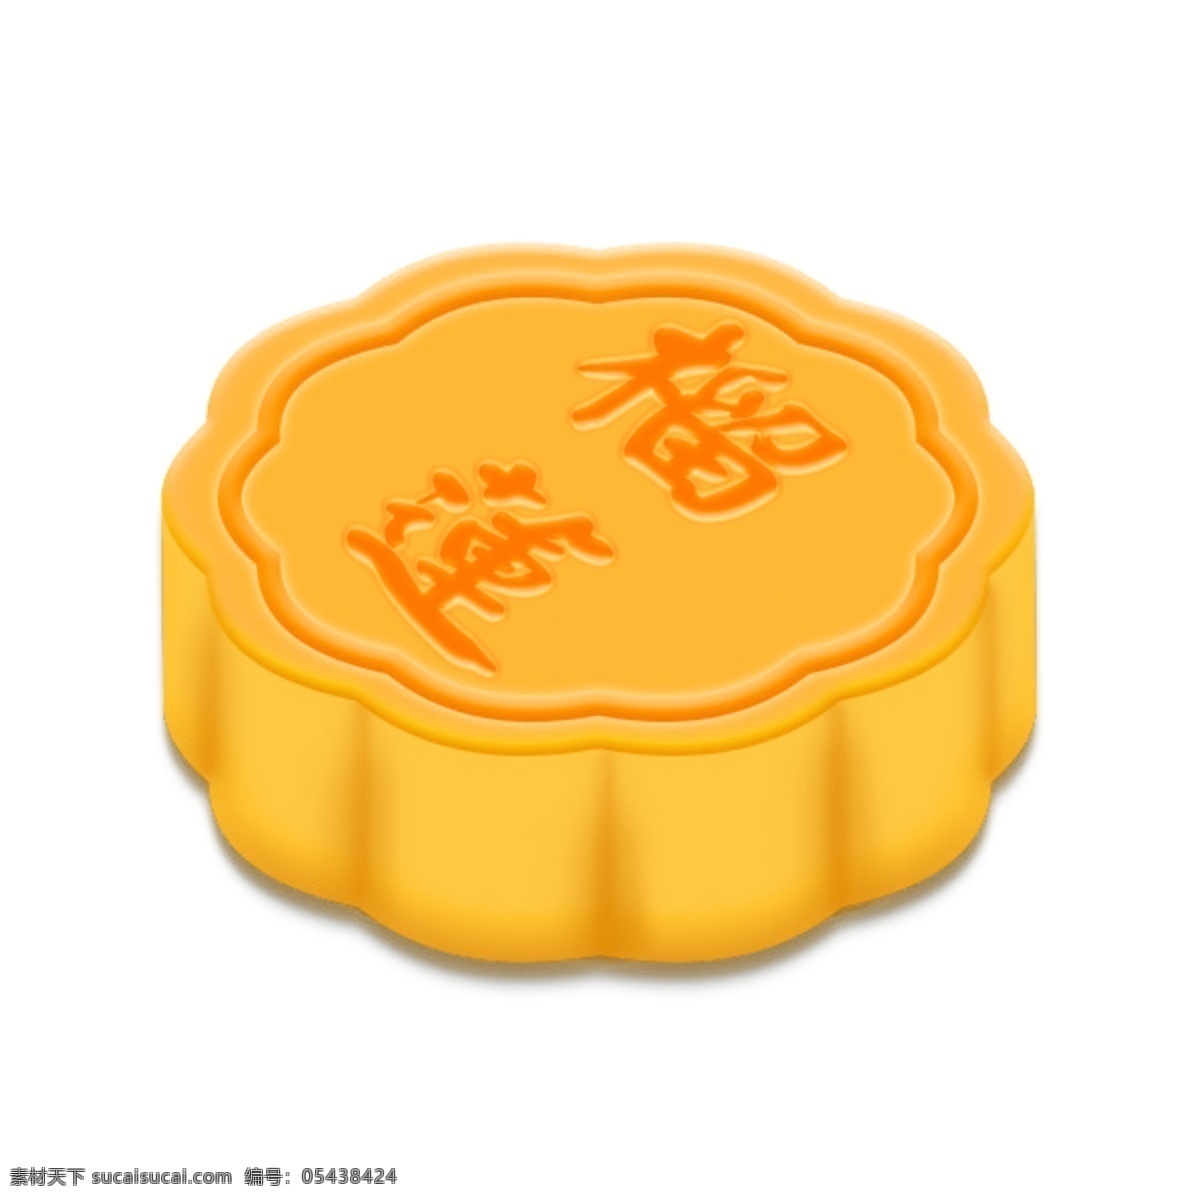 月饼 设计素材 可以 改 馅心 名字 中秋 节日 甜品 传统美食